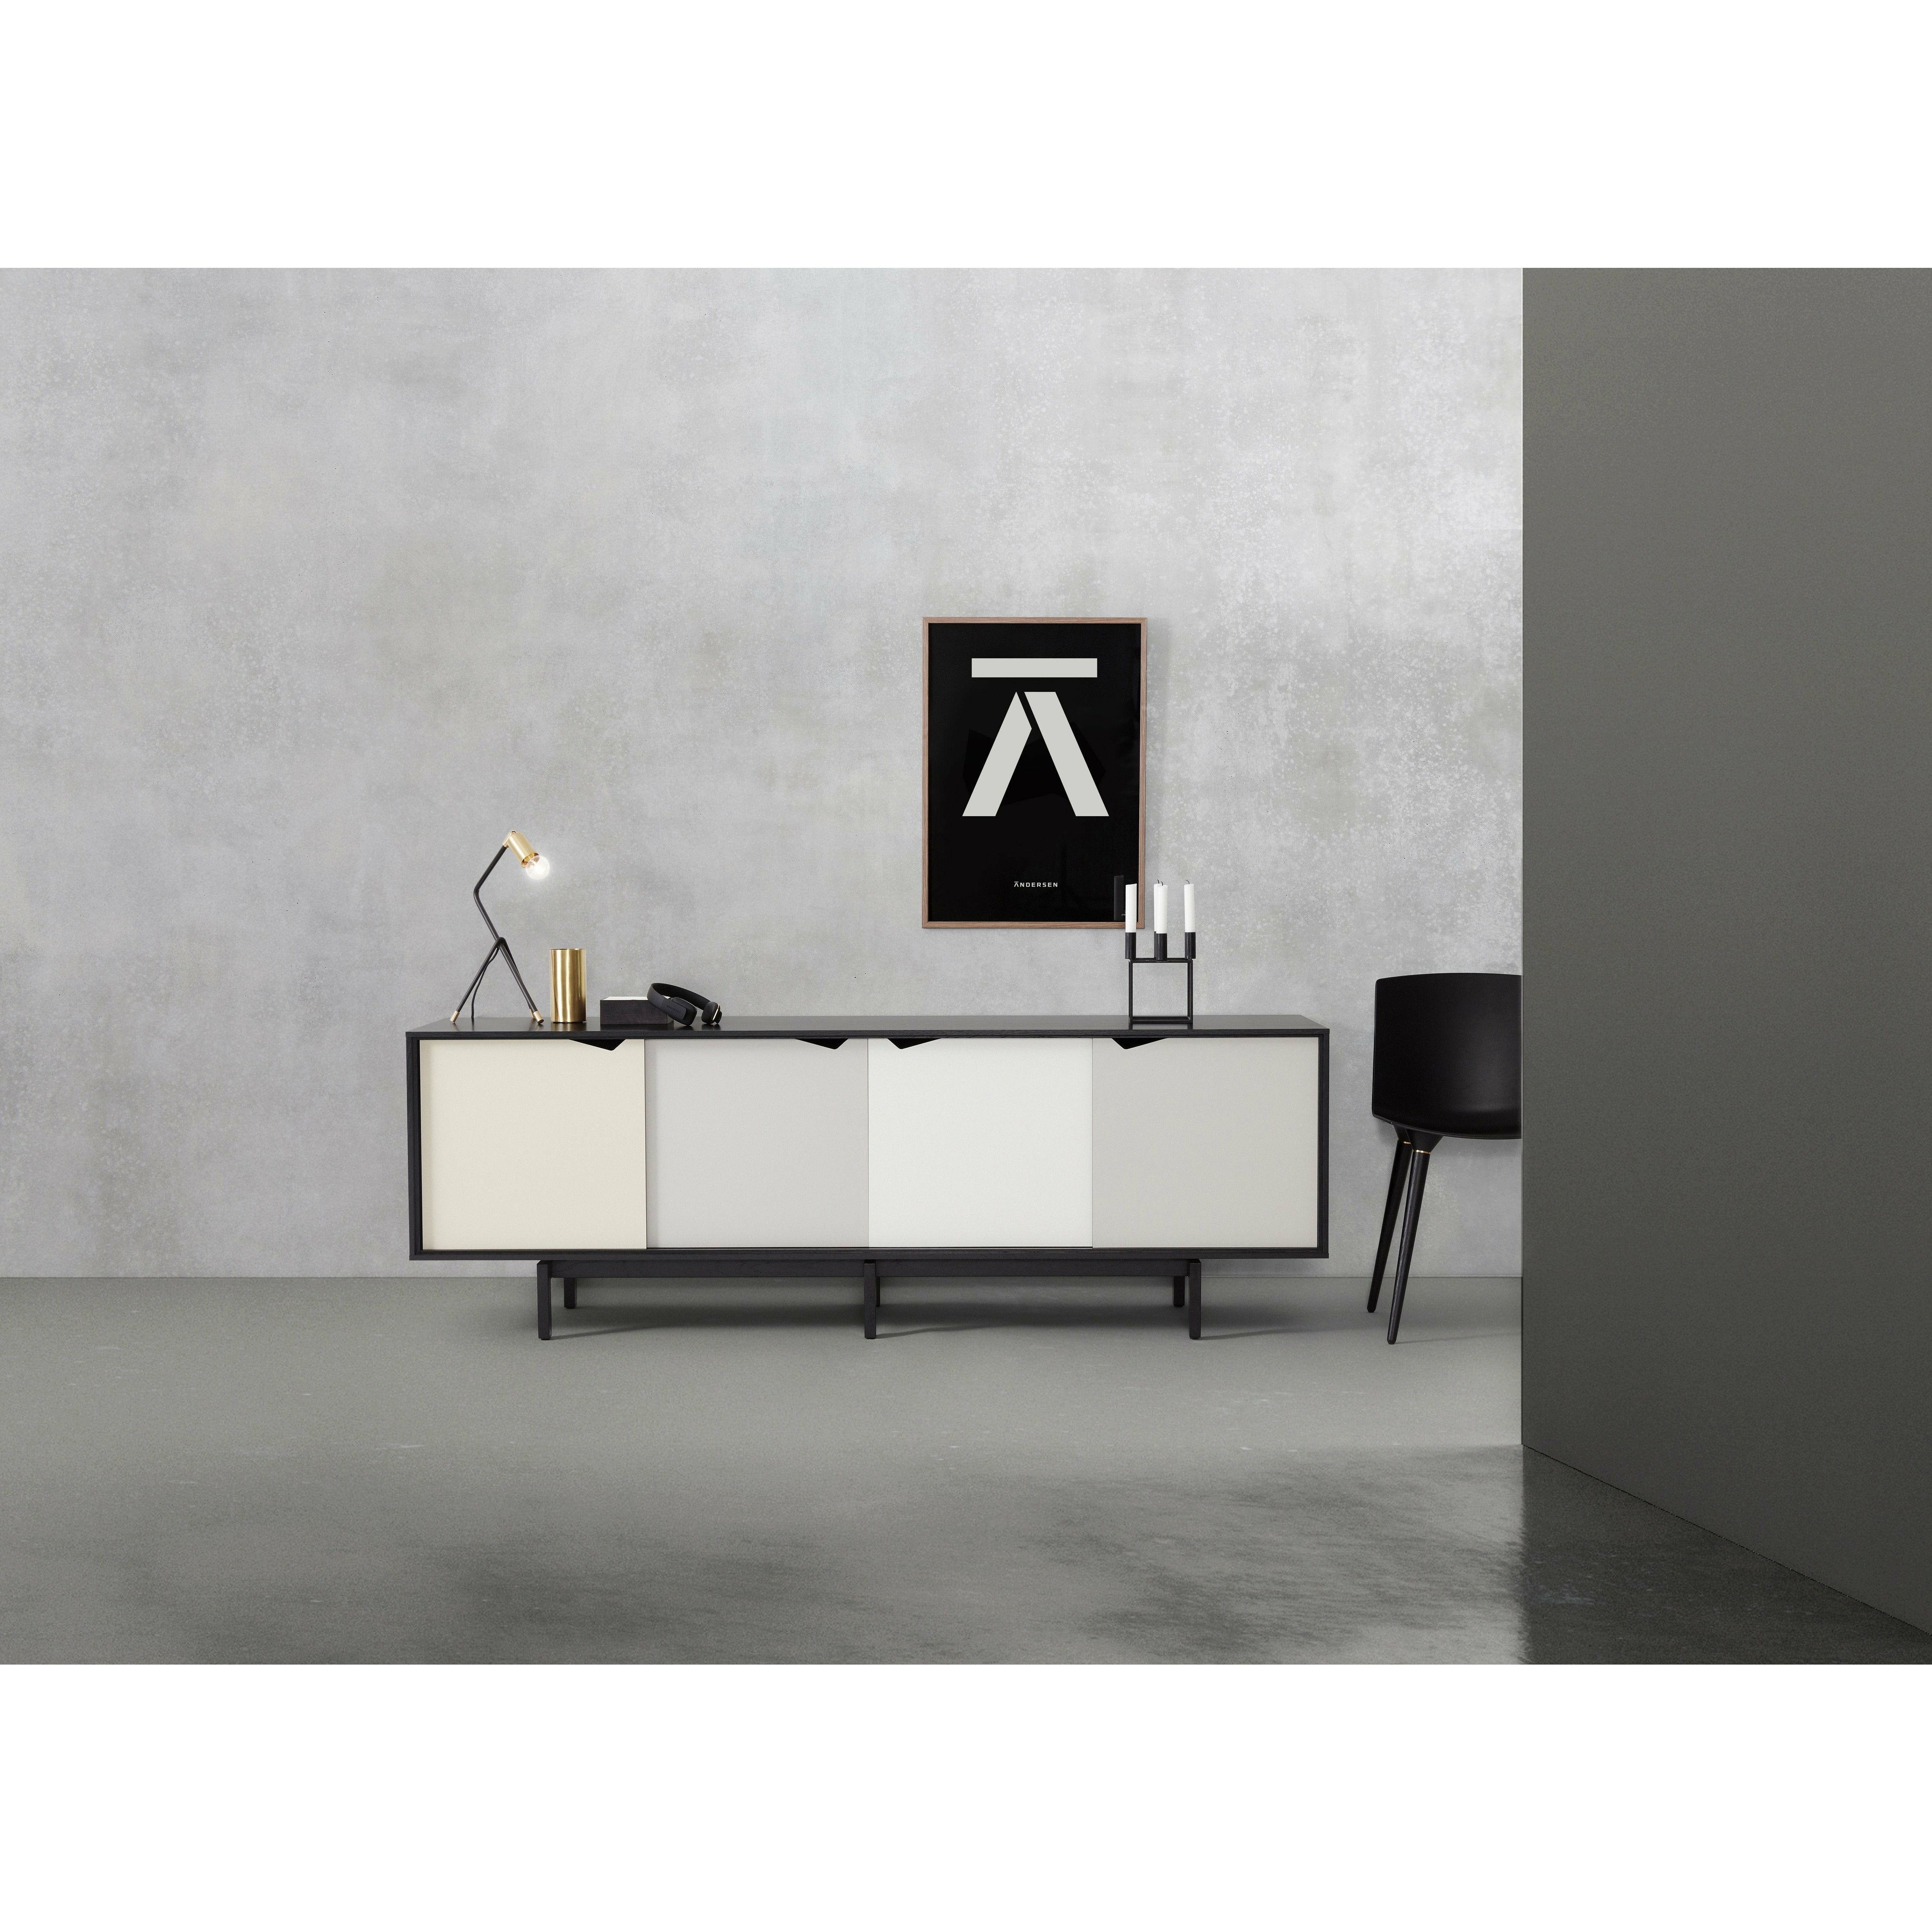 Andersen Furniture S1 på sidobadsvart, mångfärgade lådor, 200 cm